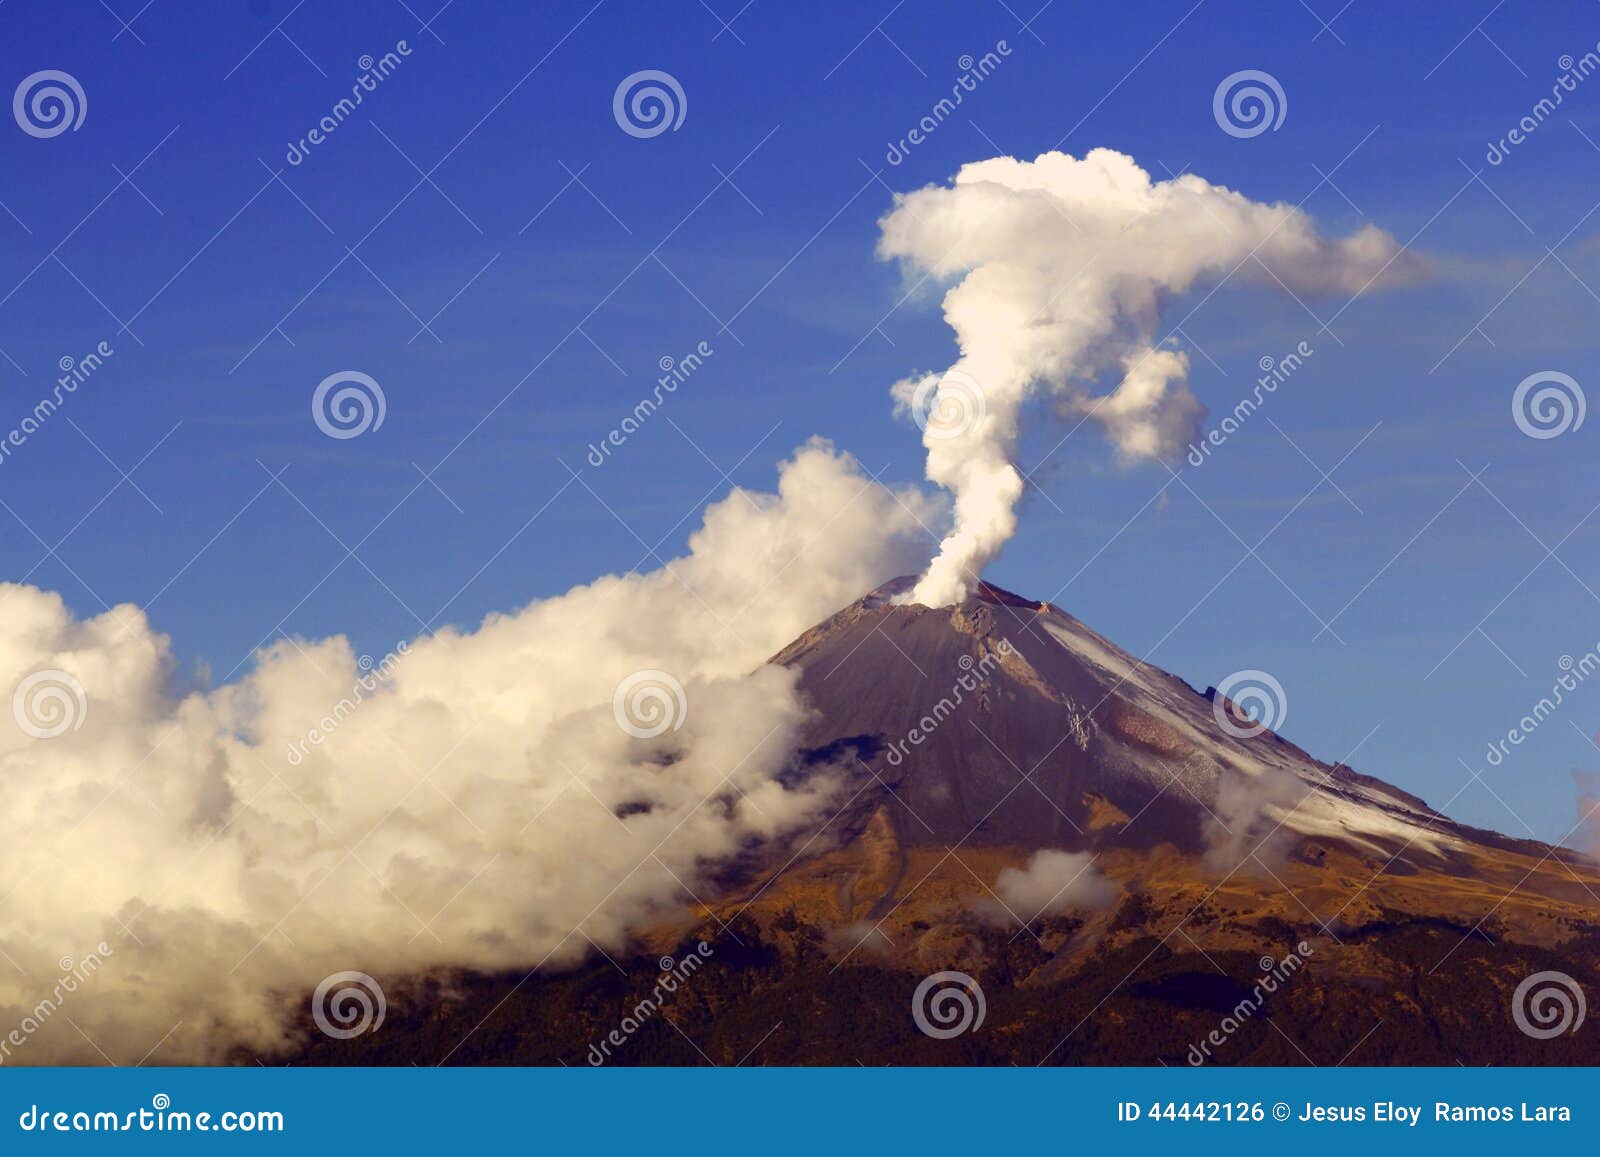 active volcano popocatepetl near the city of puebla, mexico